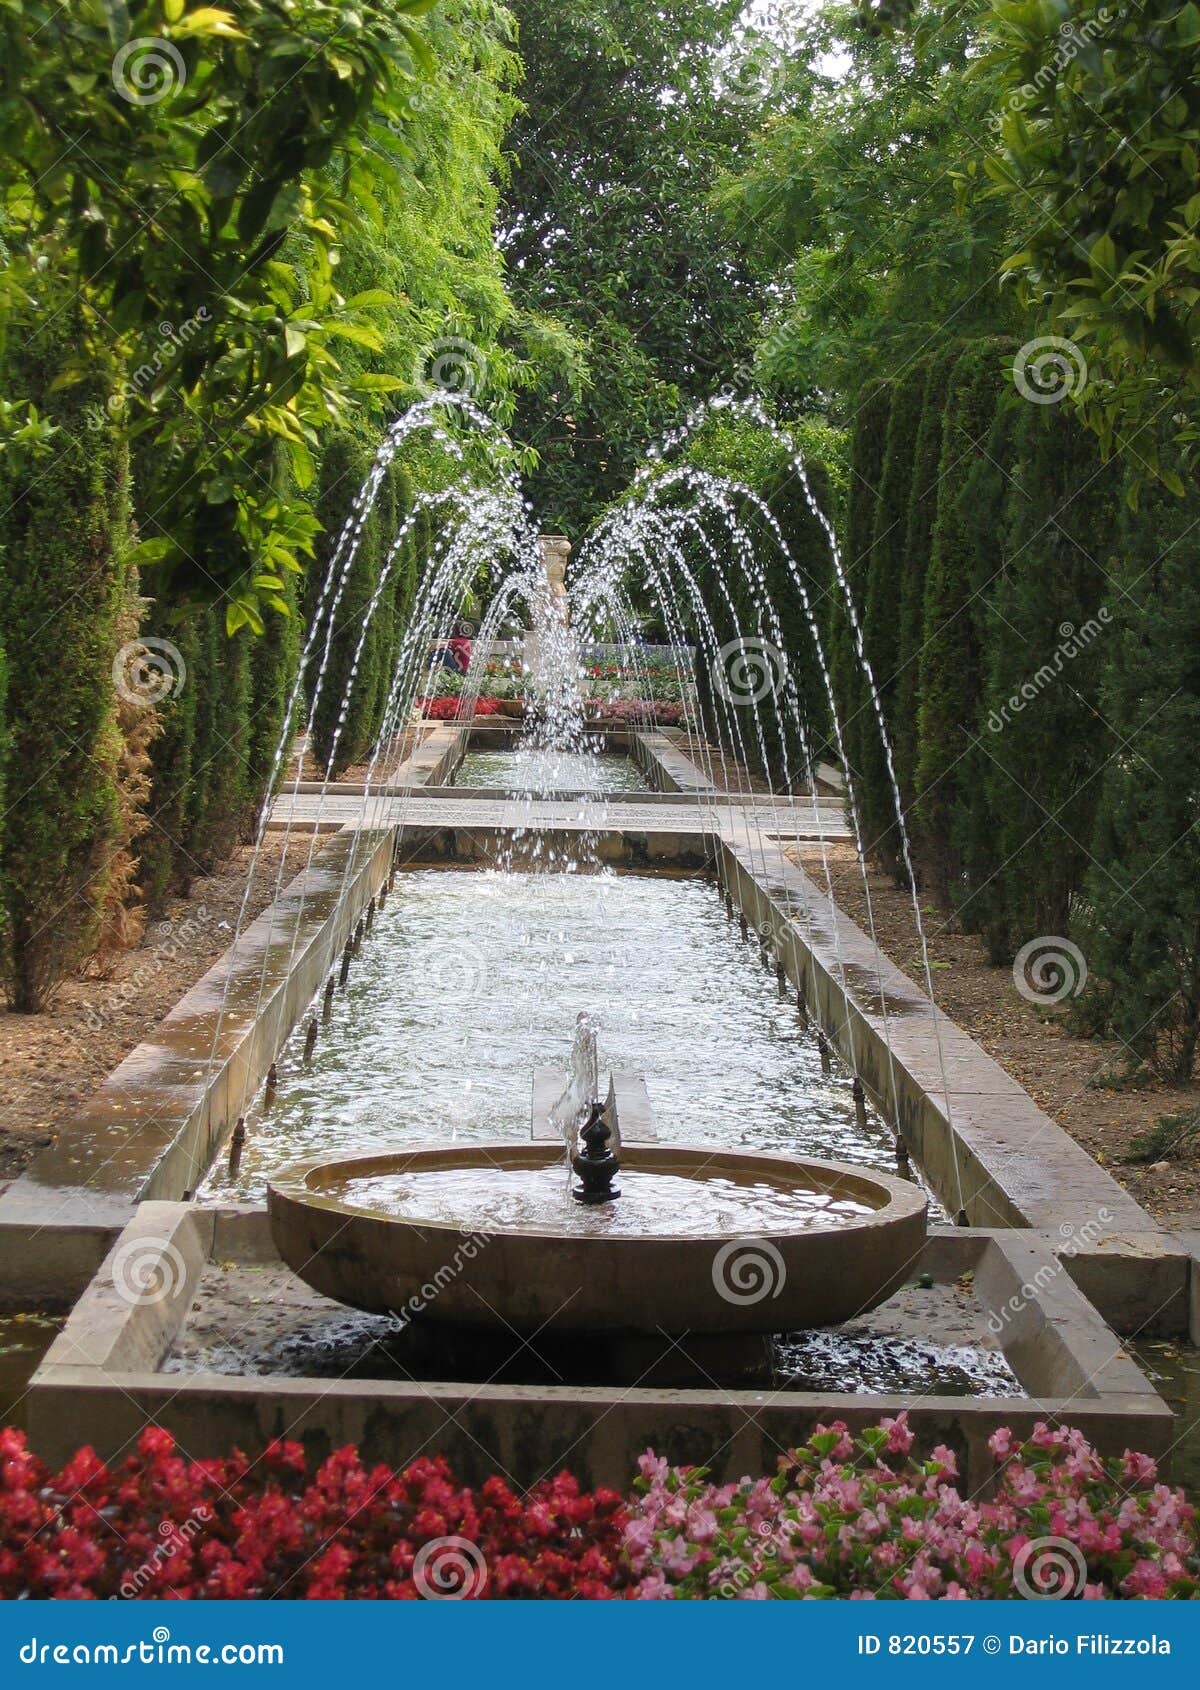 Garden with Fountain